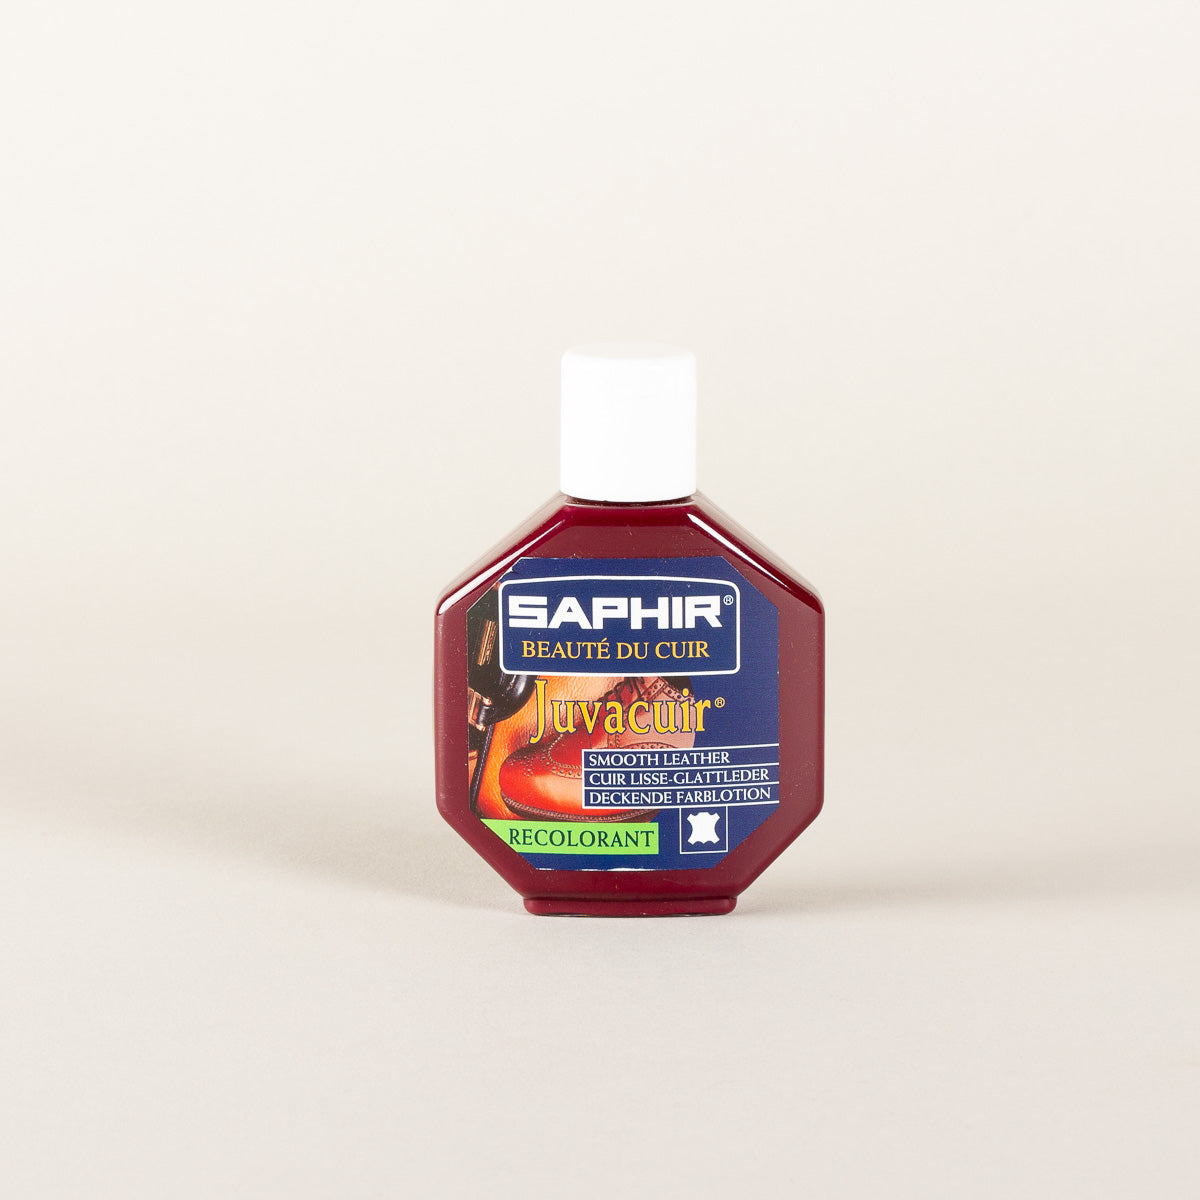 Saphir Juvacuir cream